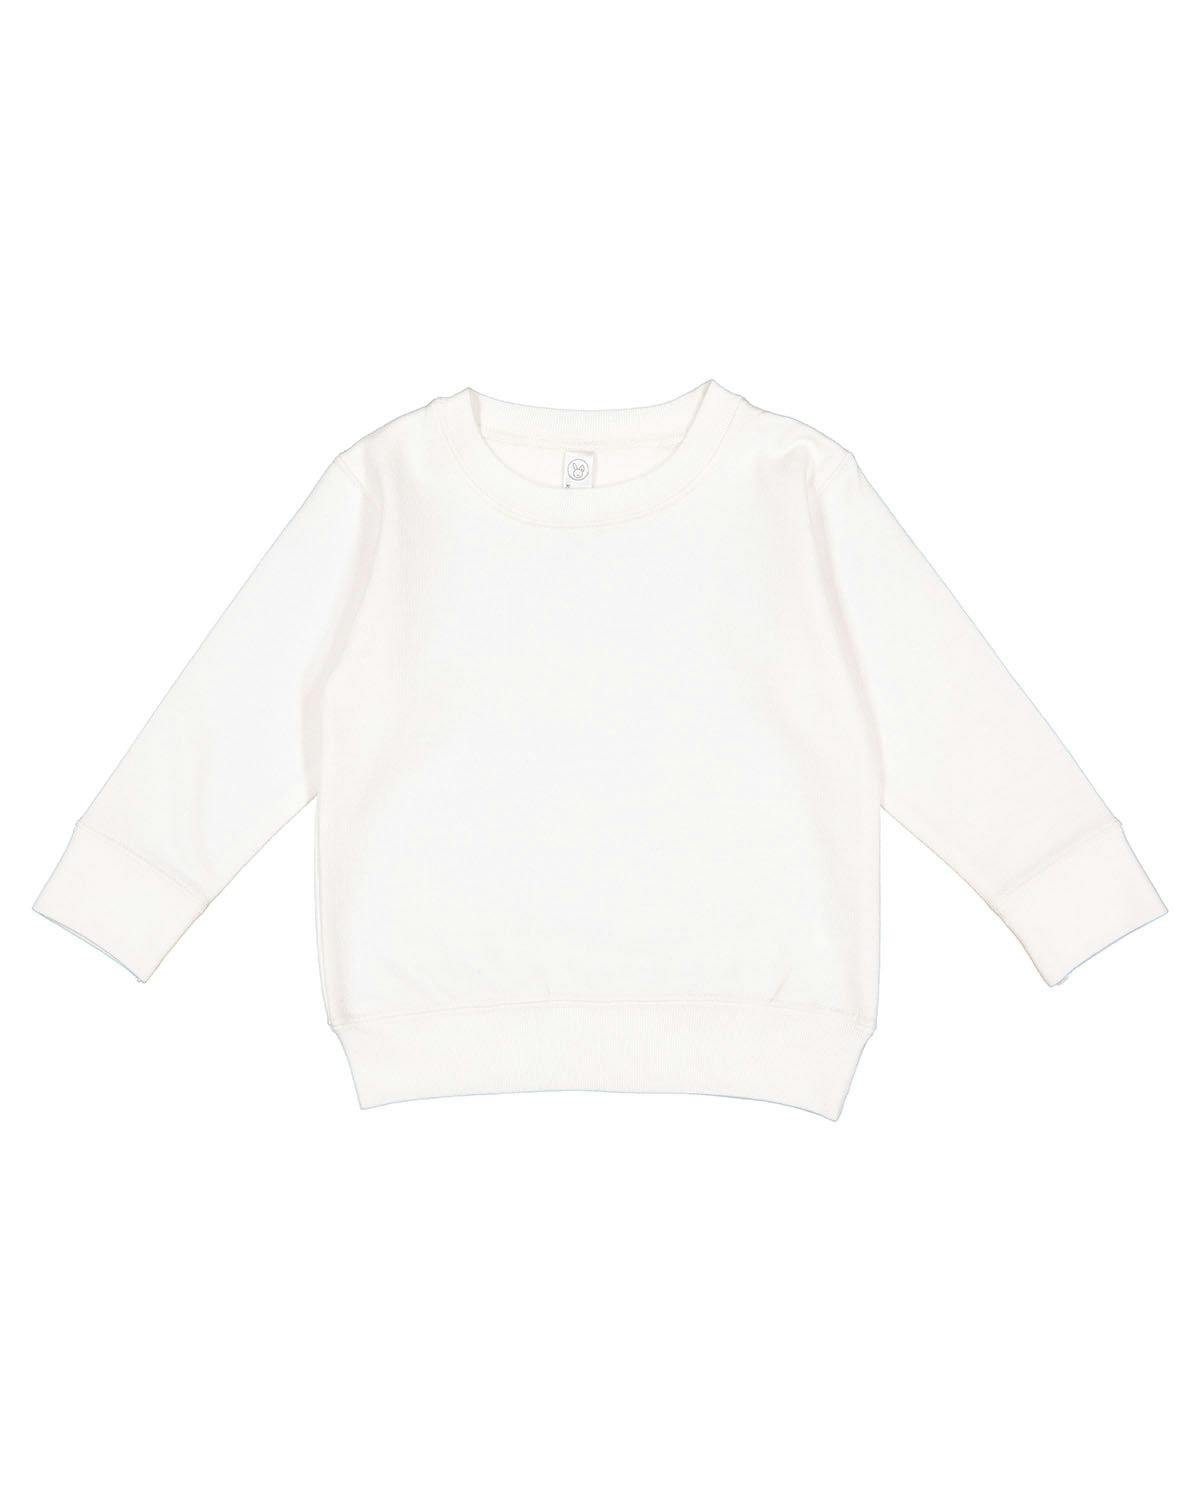 Image for Toddler Fleece Sweatshirt